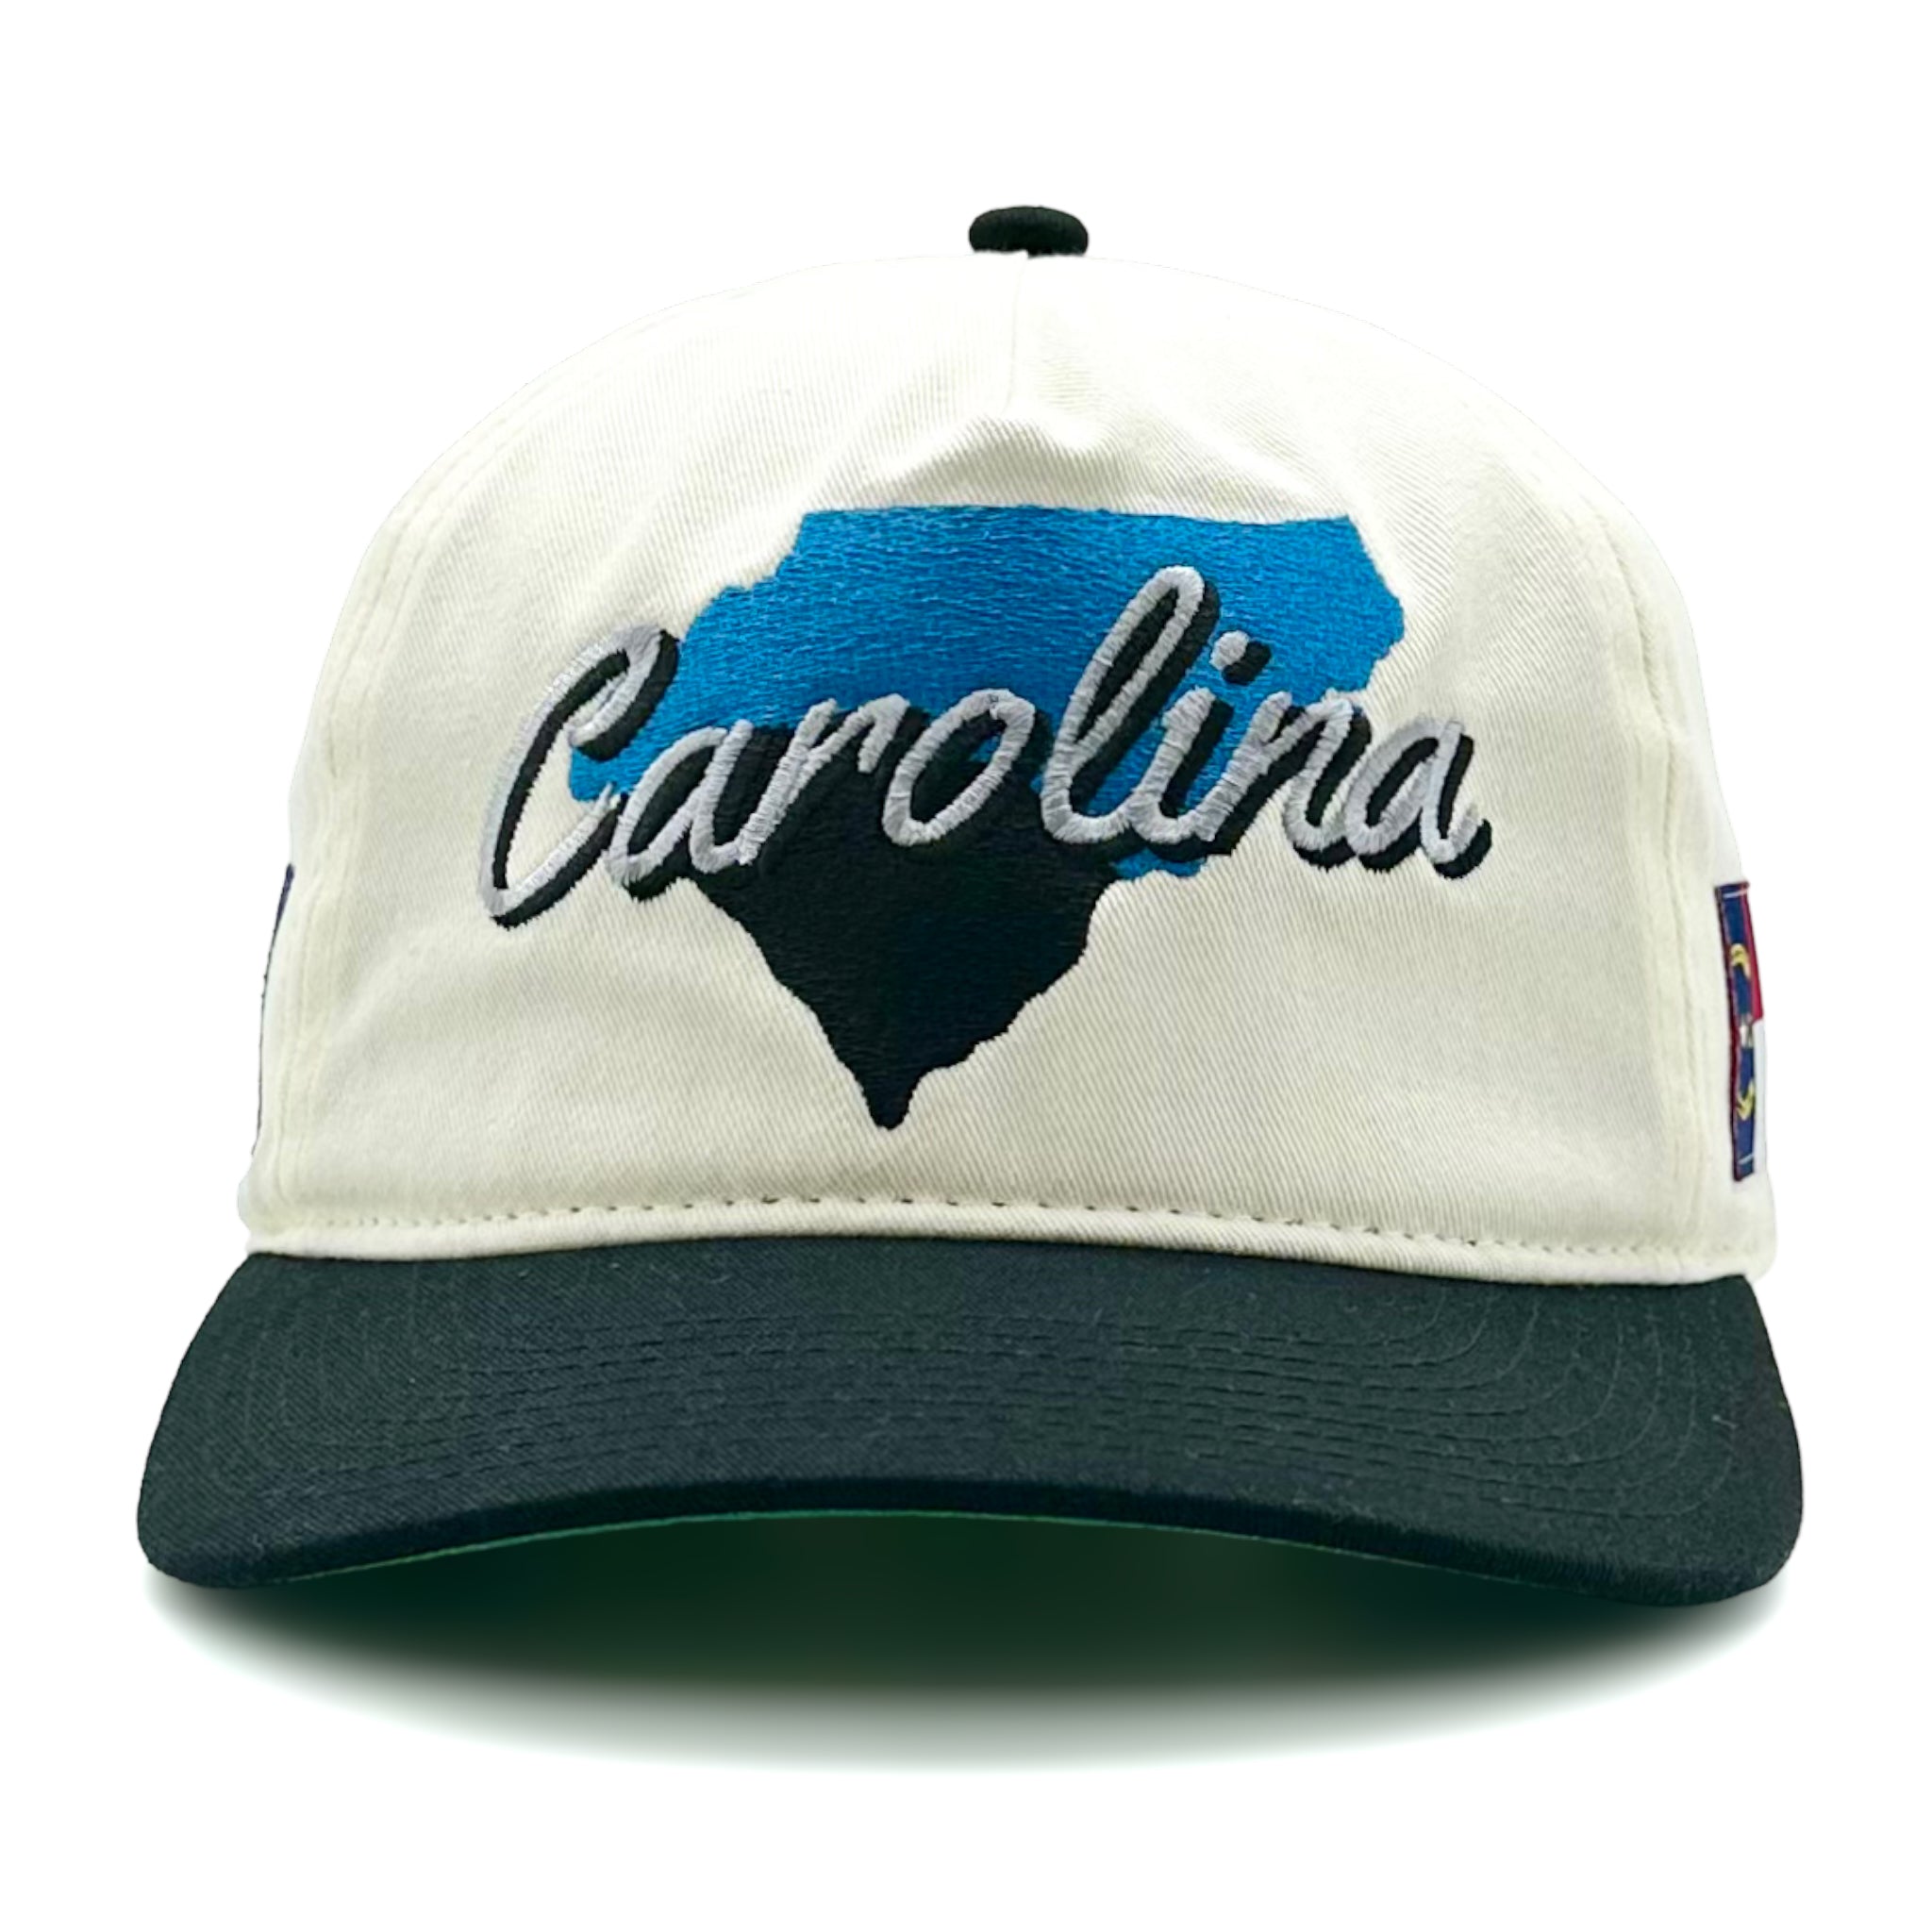 Vintage 90s Starter Florida Panthers Snapback Hat Cap